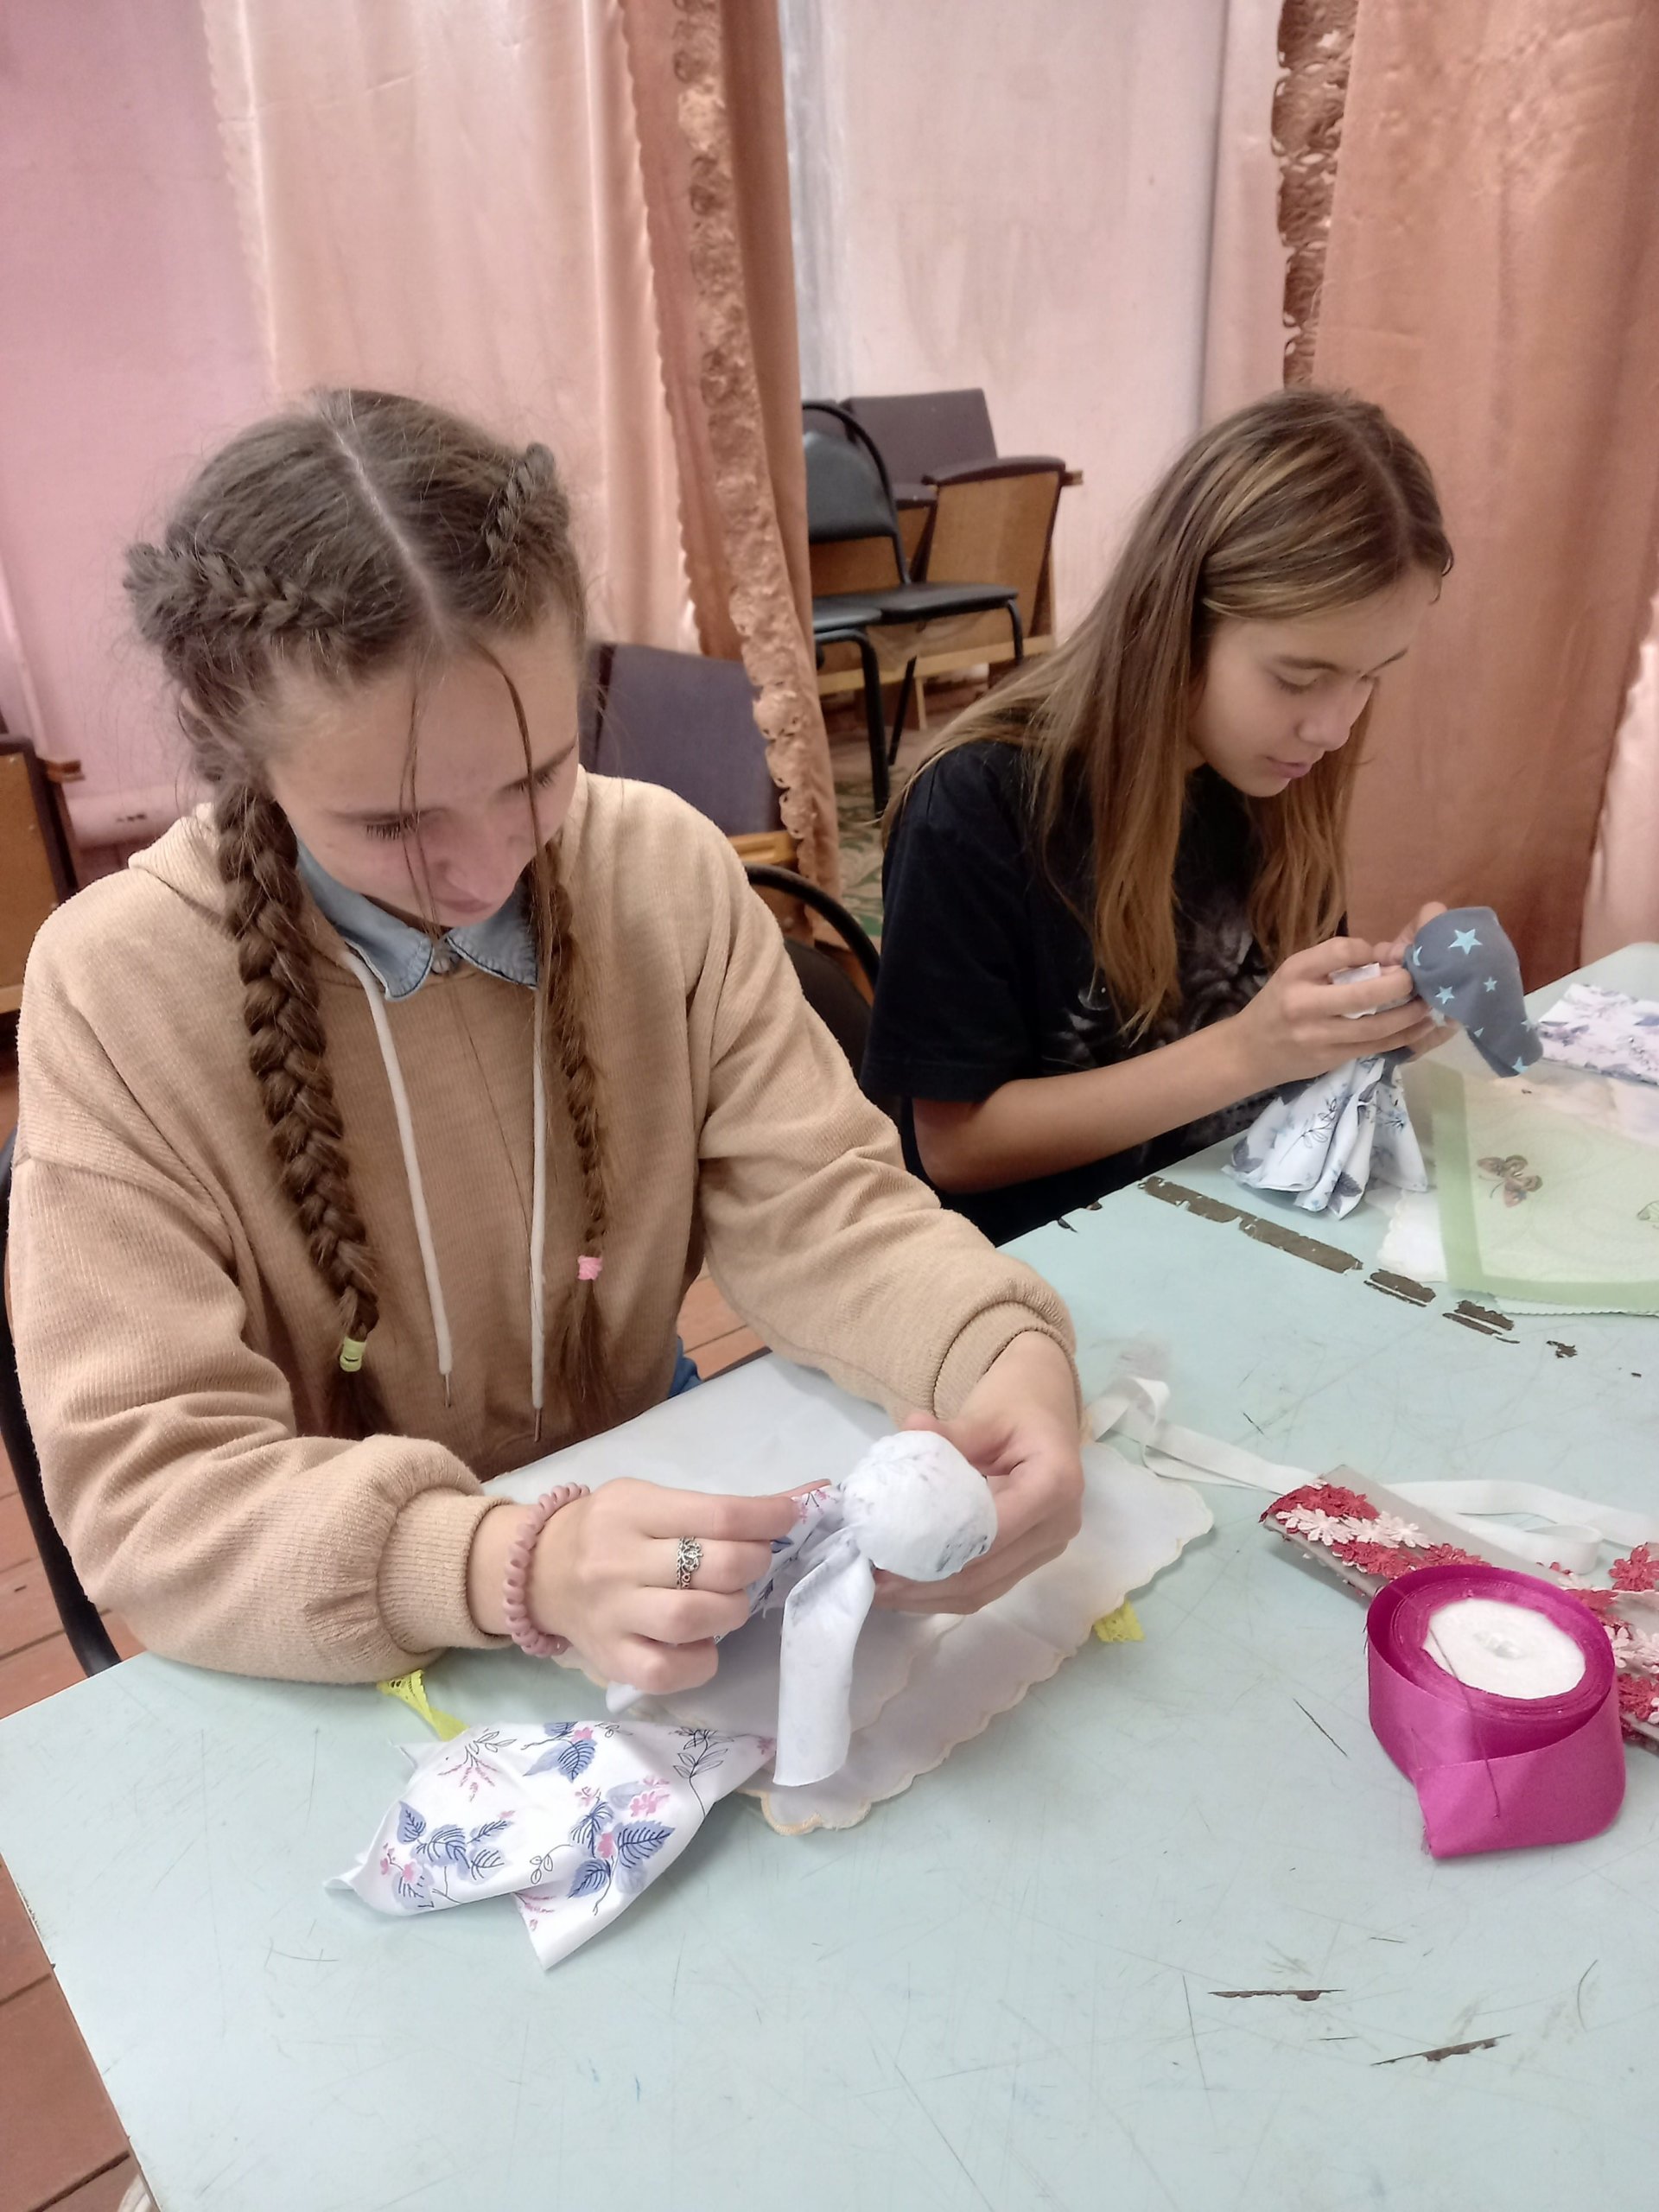 Мастер – класс в технике лоскутное шитье прошел в клубе д. Михалево